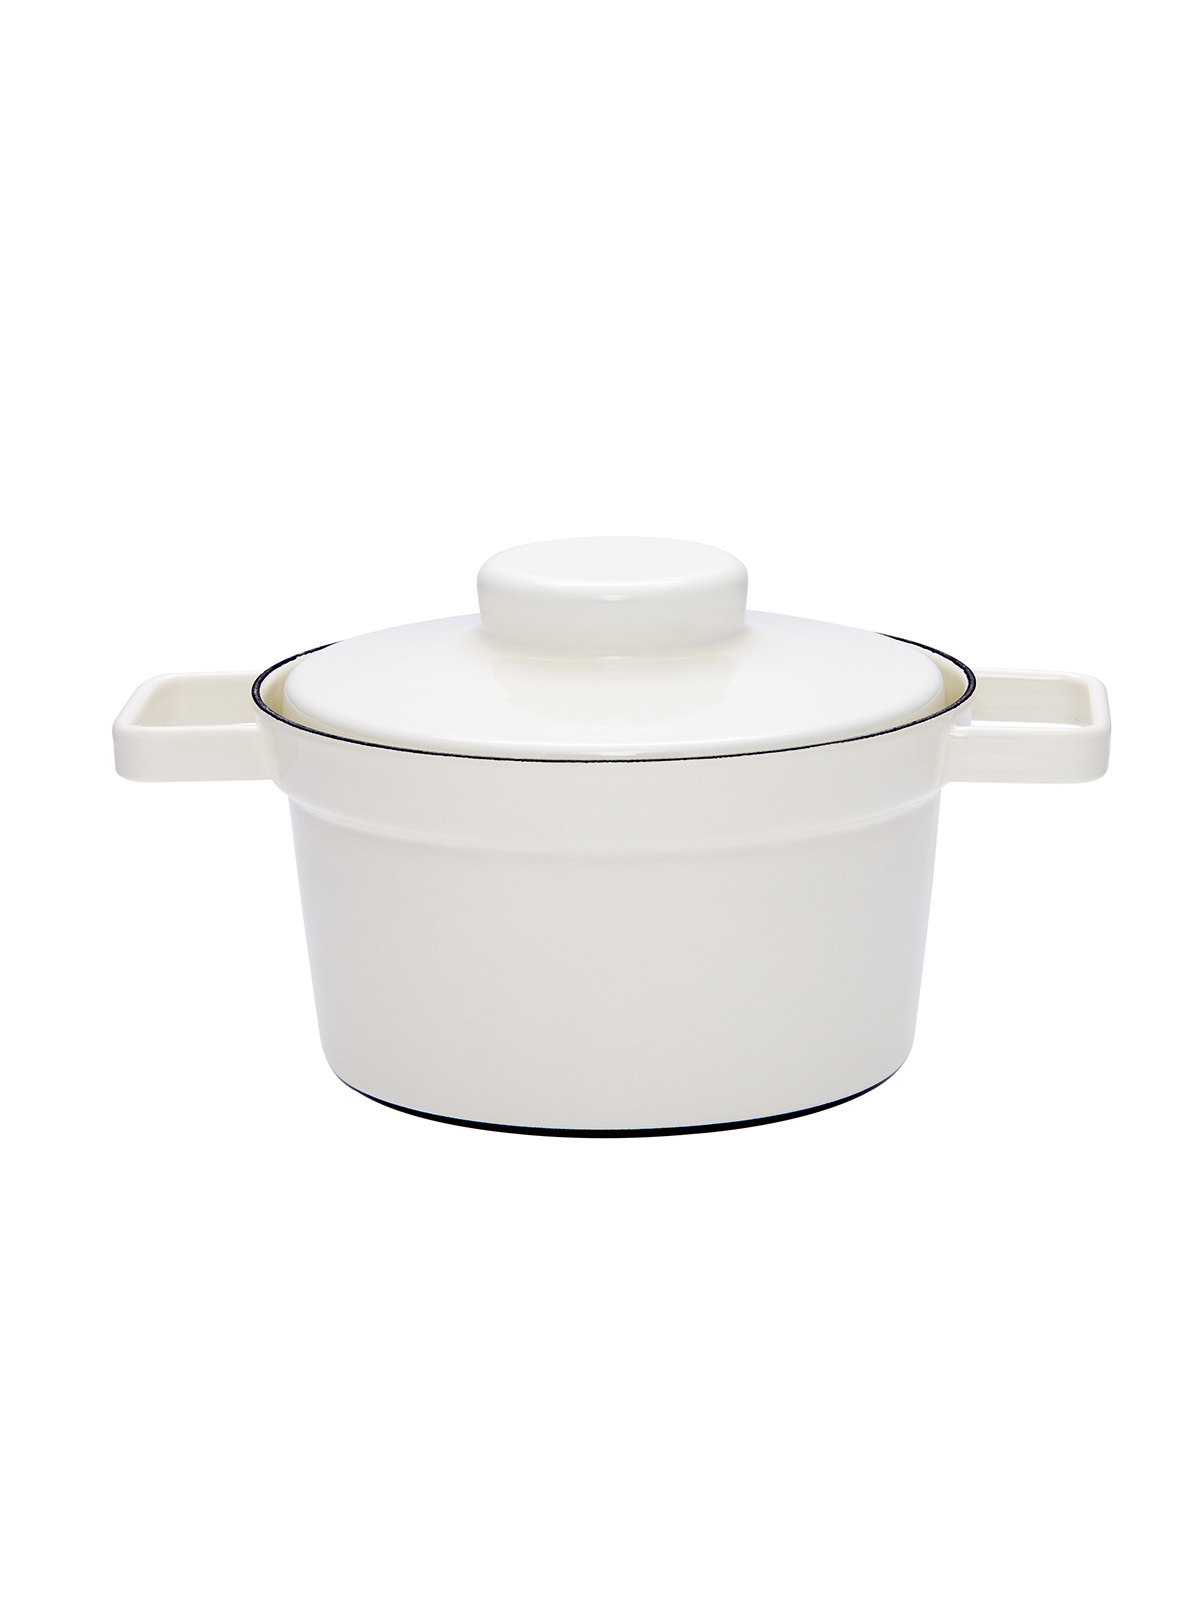 Casserol with lid 20cm, white, 1,75 liter